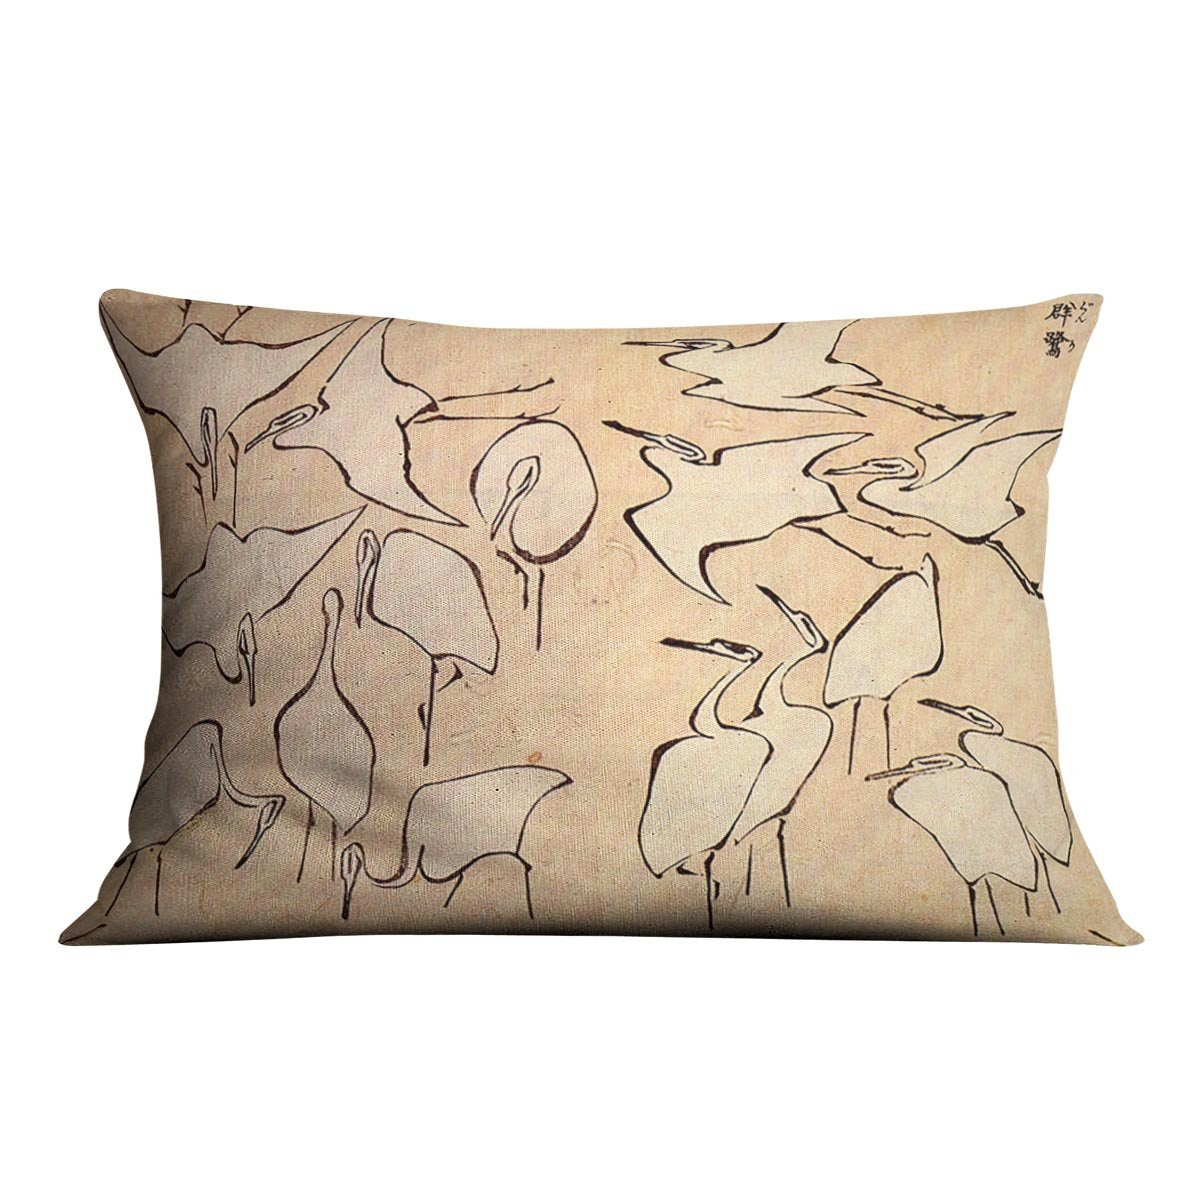 Cranes by Hokusai Throw Pillow